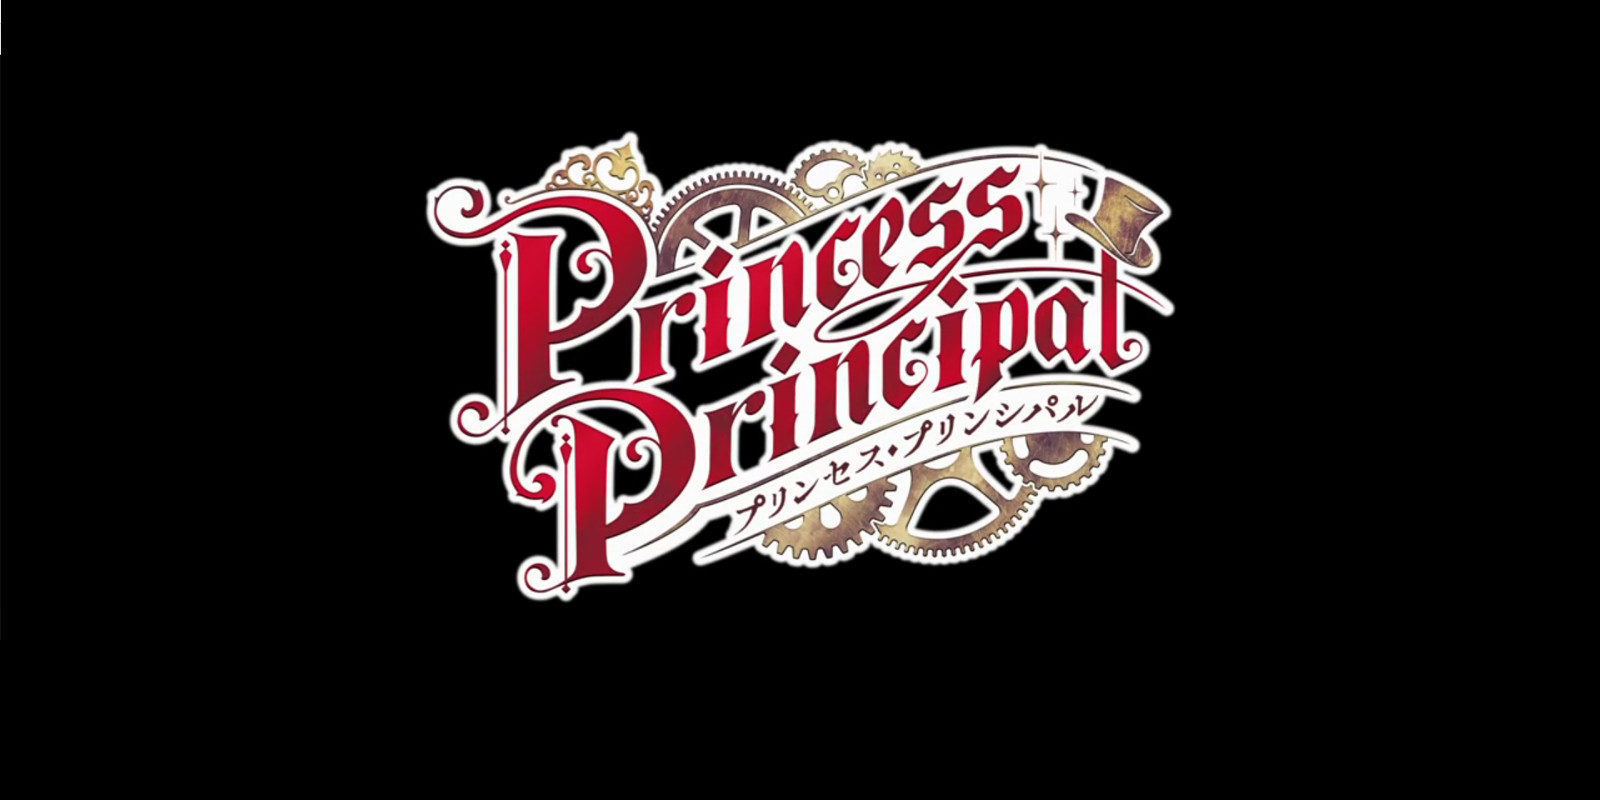 'Princess Principal' desvela quiénes interpretarán sus temas principales